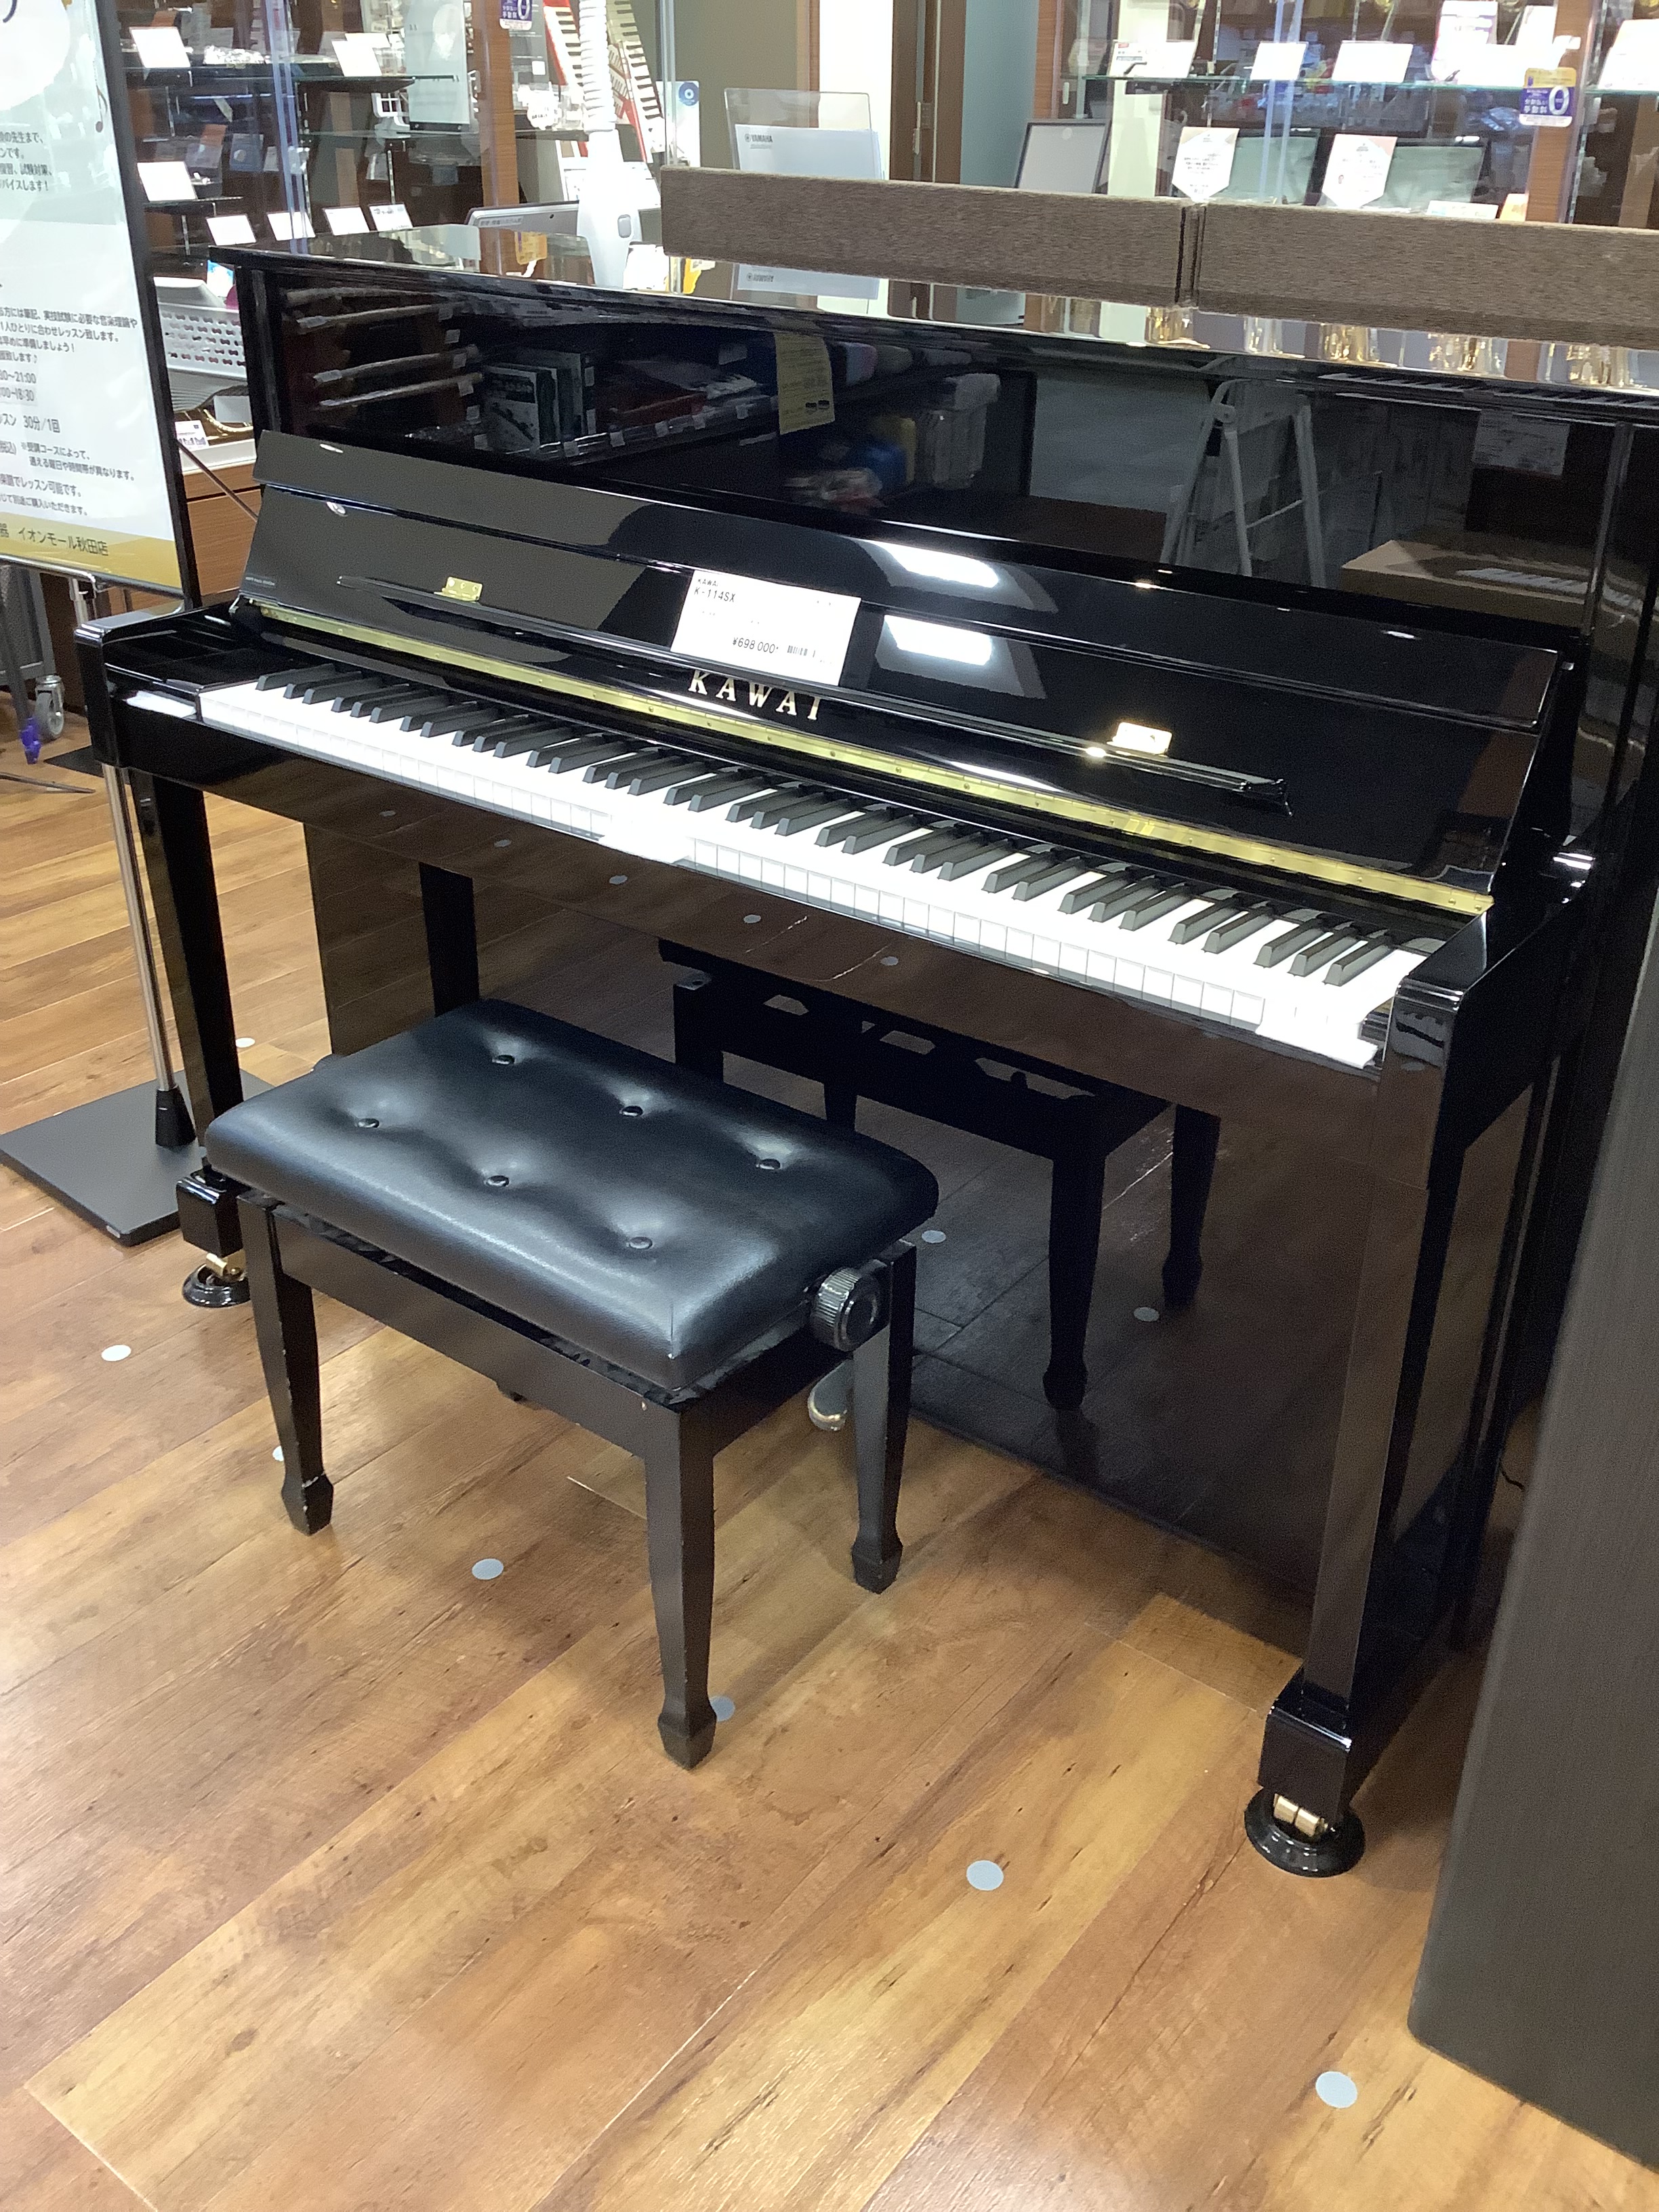 カワイ × 島村楽器コラボレーションモデル 第4弾として登場したK-114SX BPは、「ピアノは黒艶出しが良い」という方のための高さ113cmのコンパクトでシンプルなデザインのピアノです。 CONTENTS特徴仕様特徴 ロイヤルジョージ・フェルト使用のハンマー 世界のコンサートグランドピアノで使わ […]